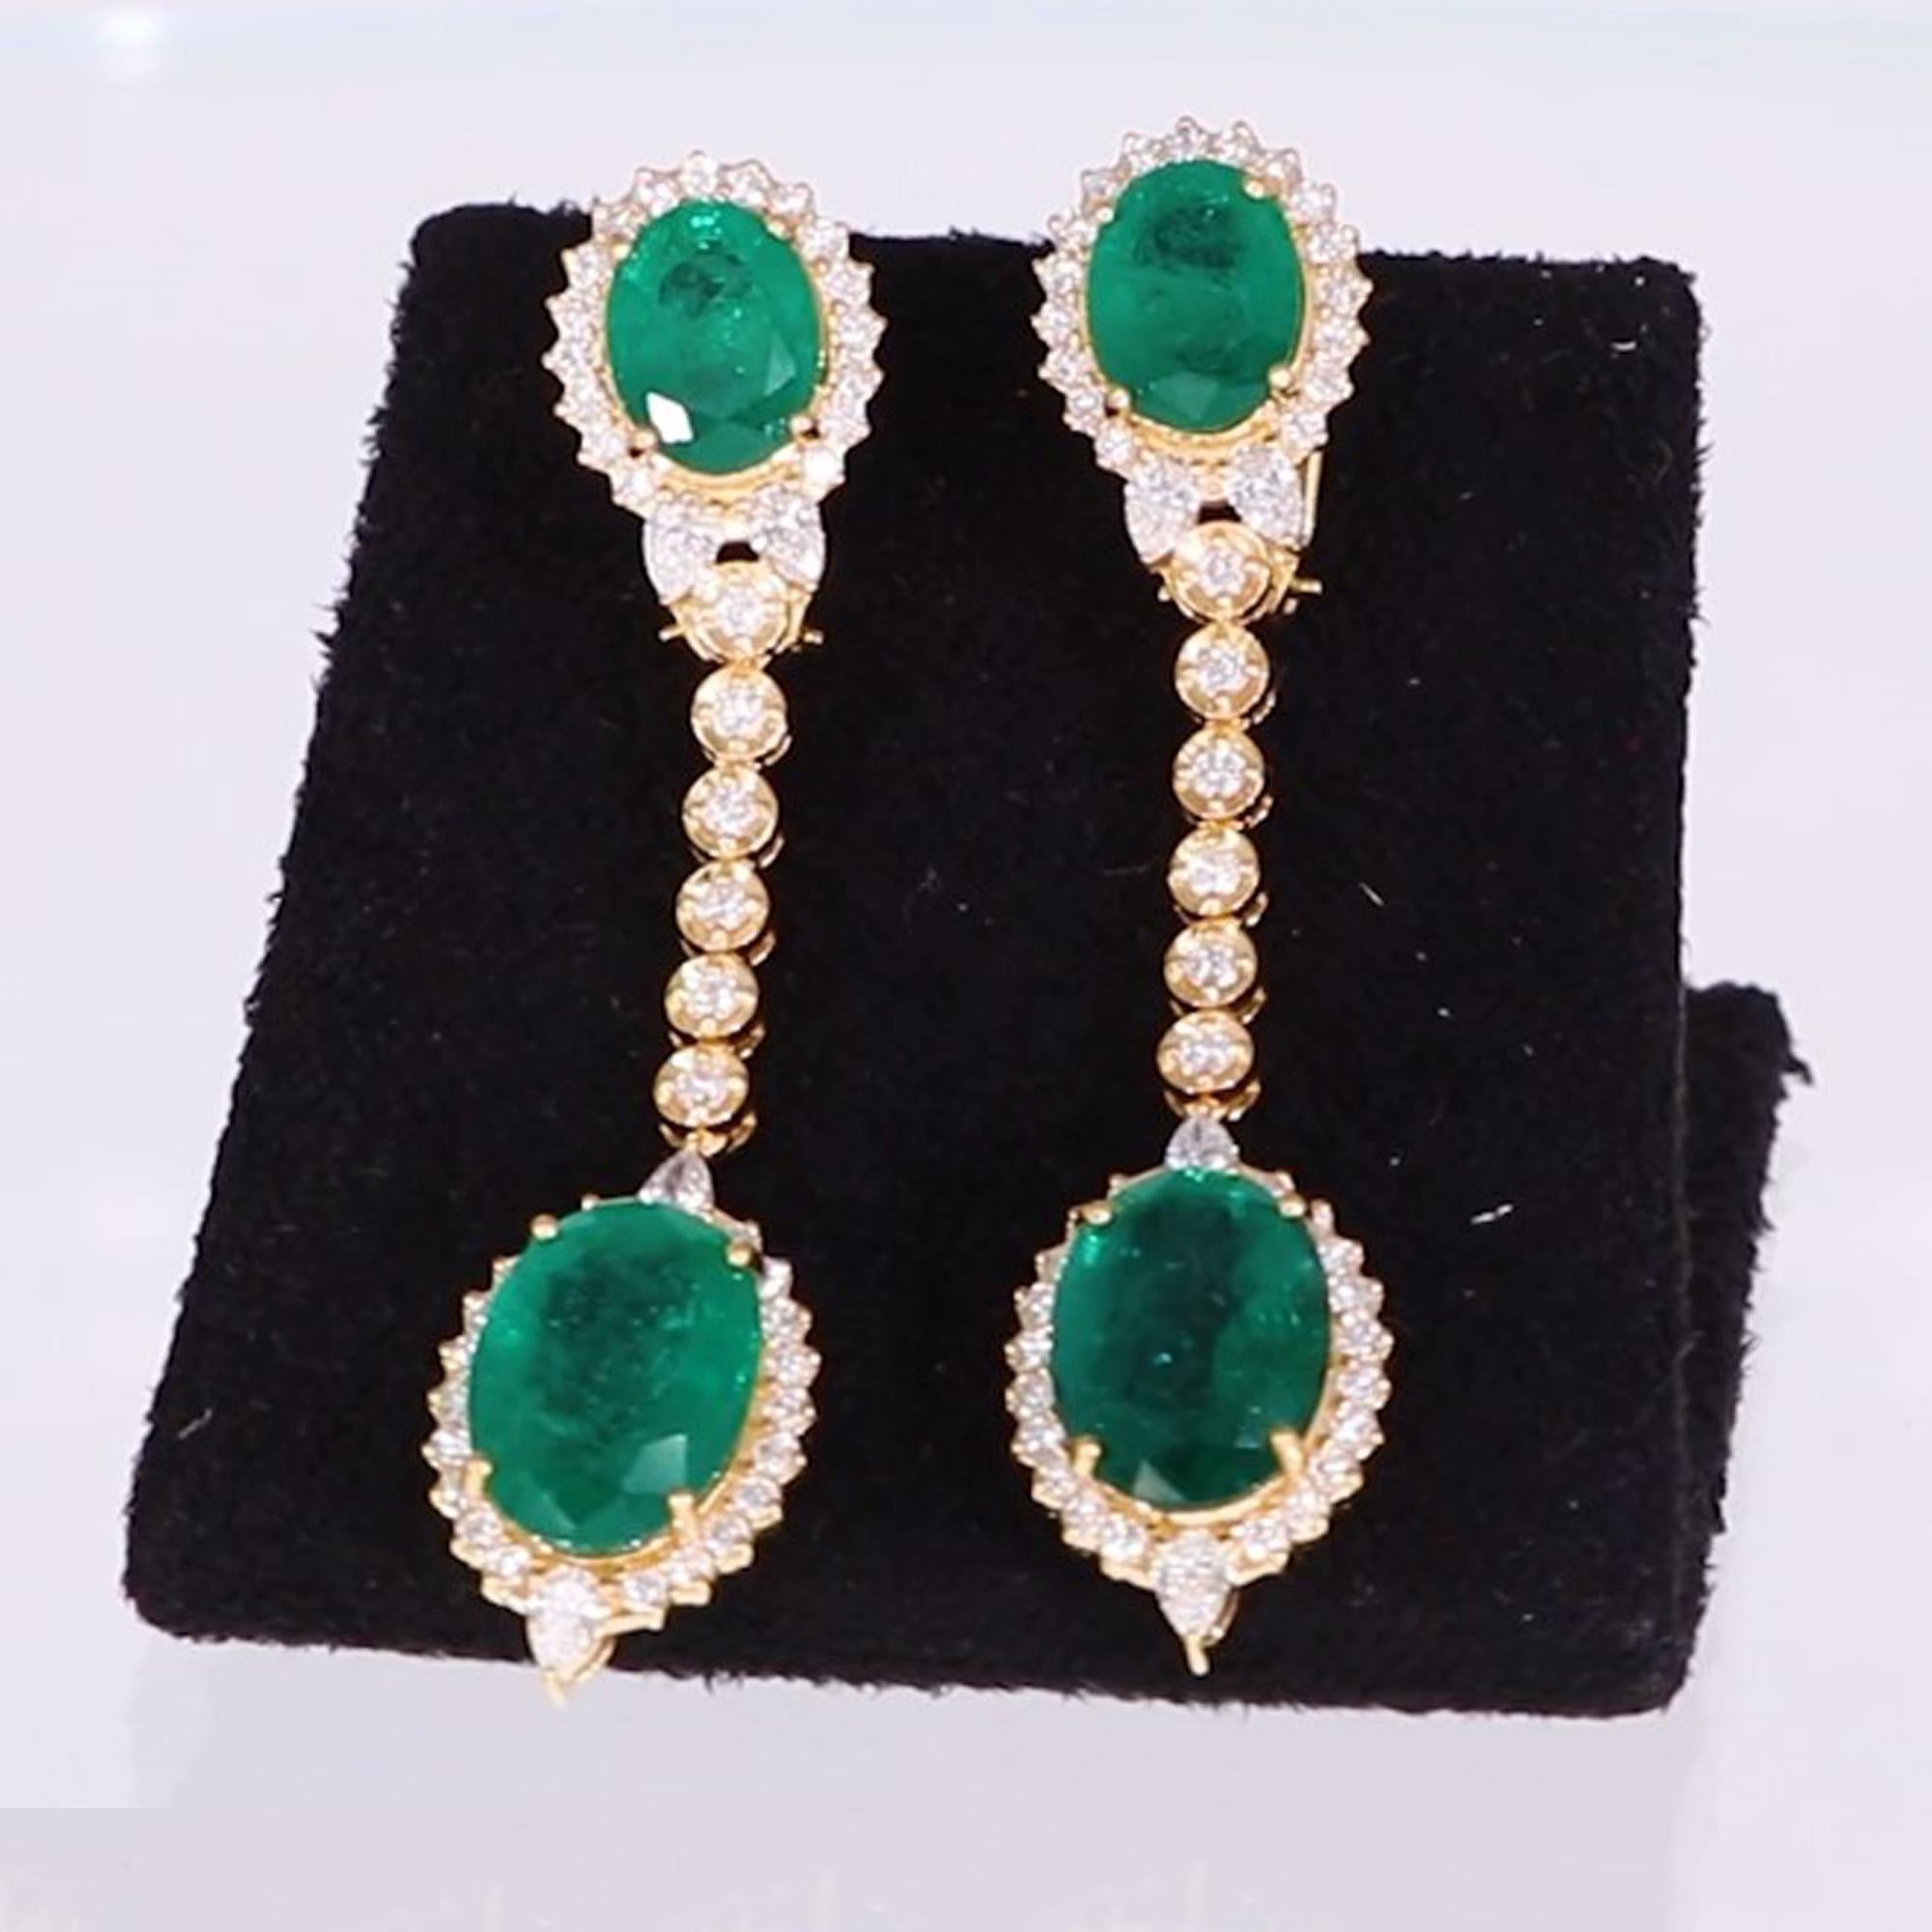 Oval Cut Zambian Emerald Gemstone Dangle Earrings Diamond 18 Karat Yellow Gold Jewelry For Sale